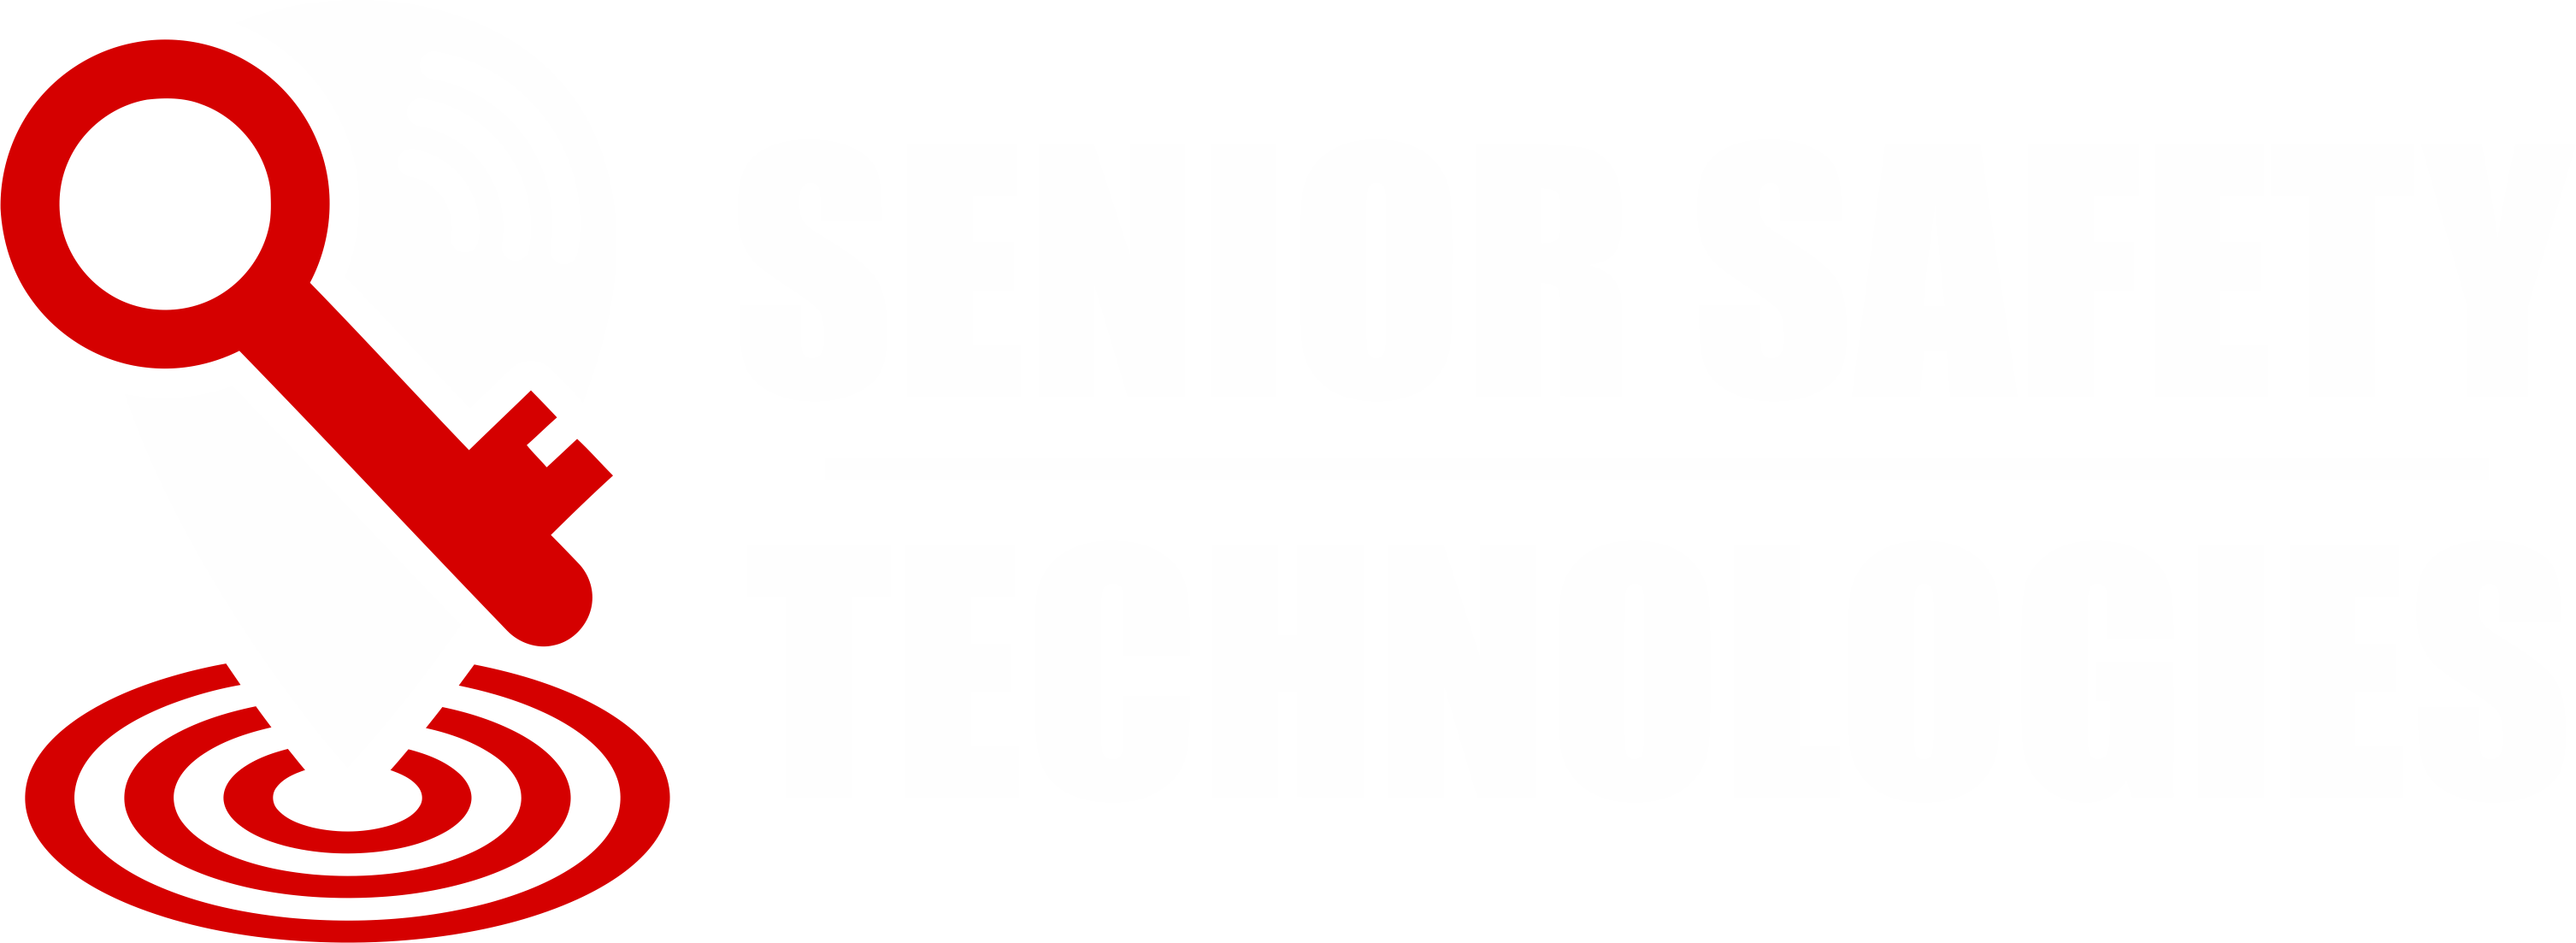 Senior Safety Tech